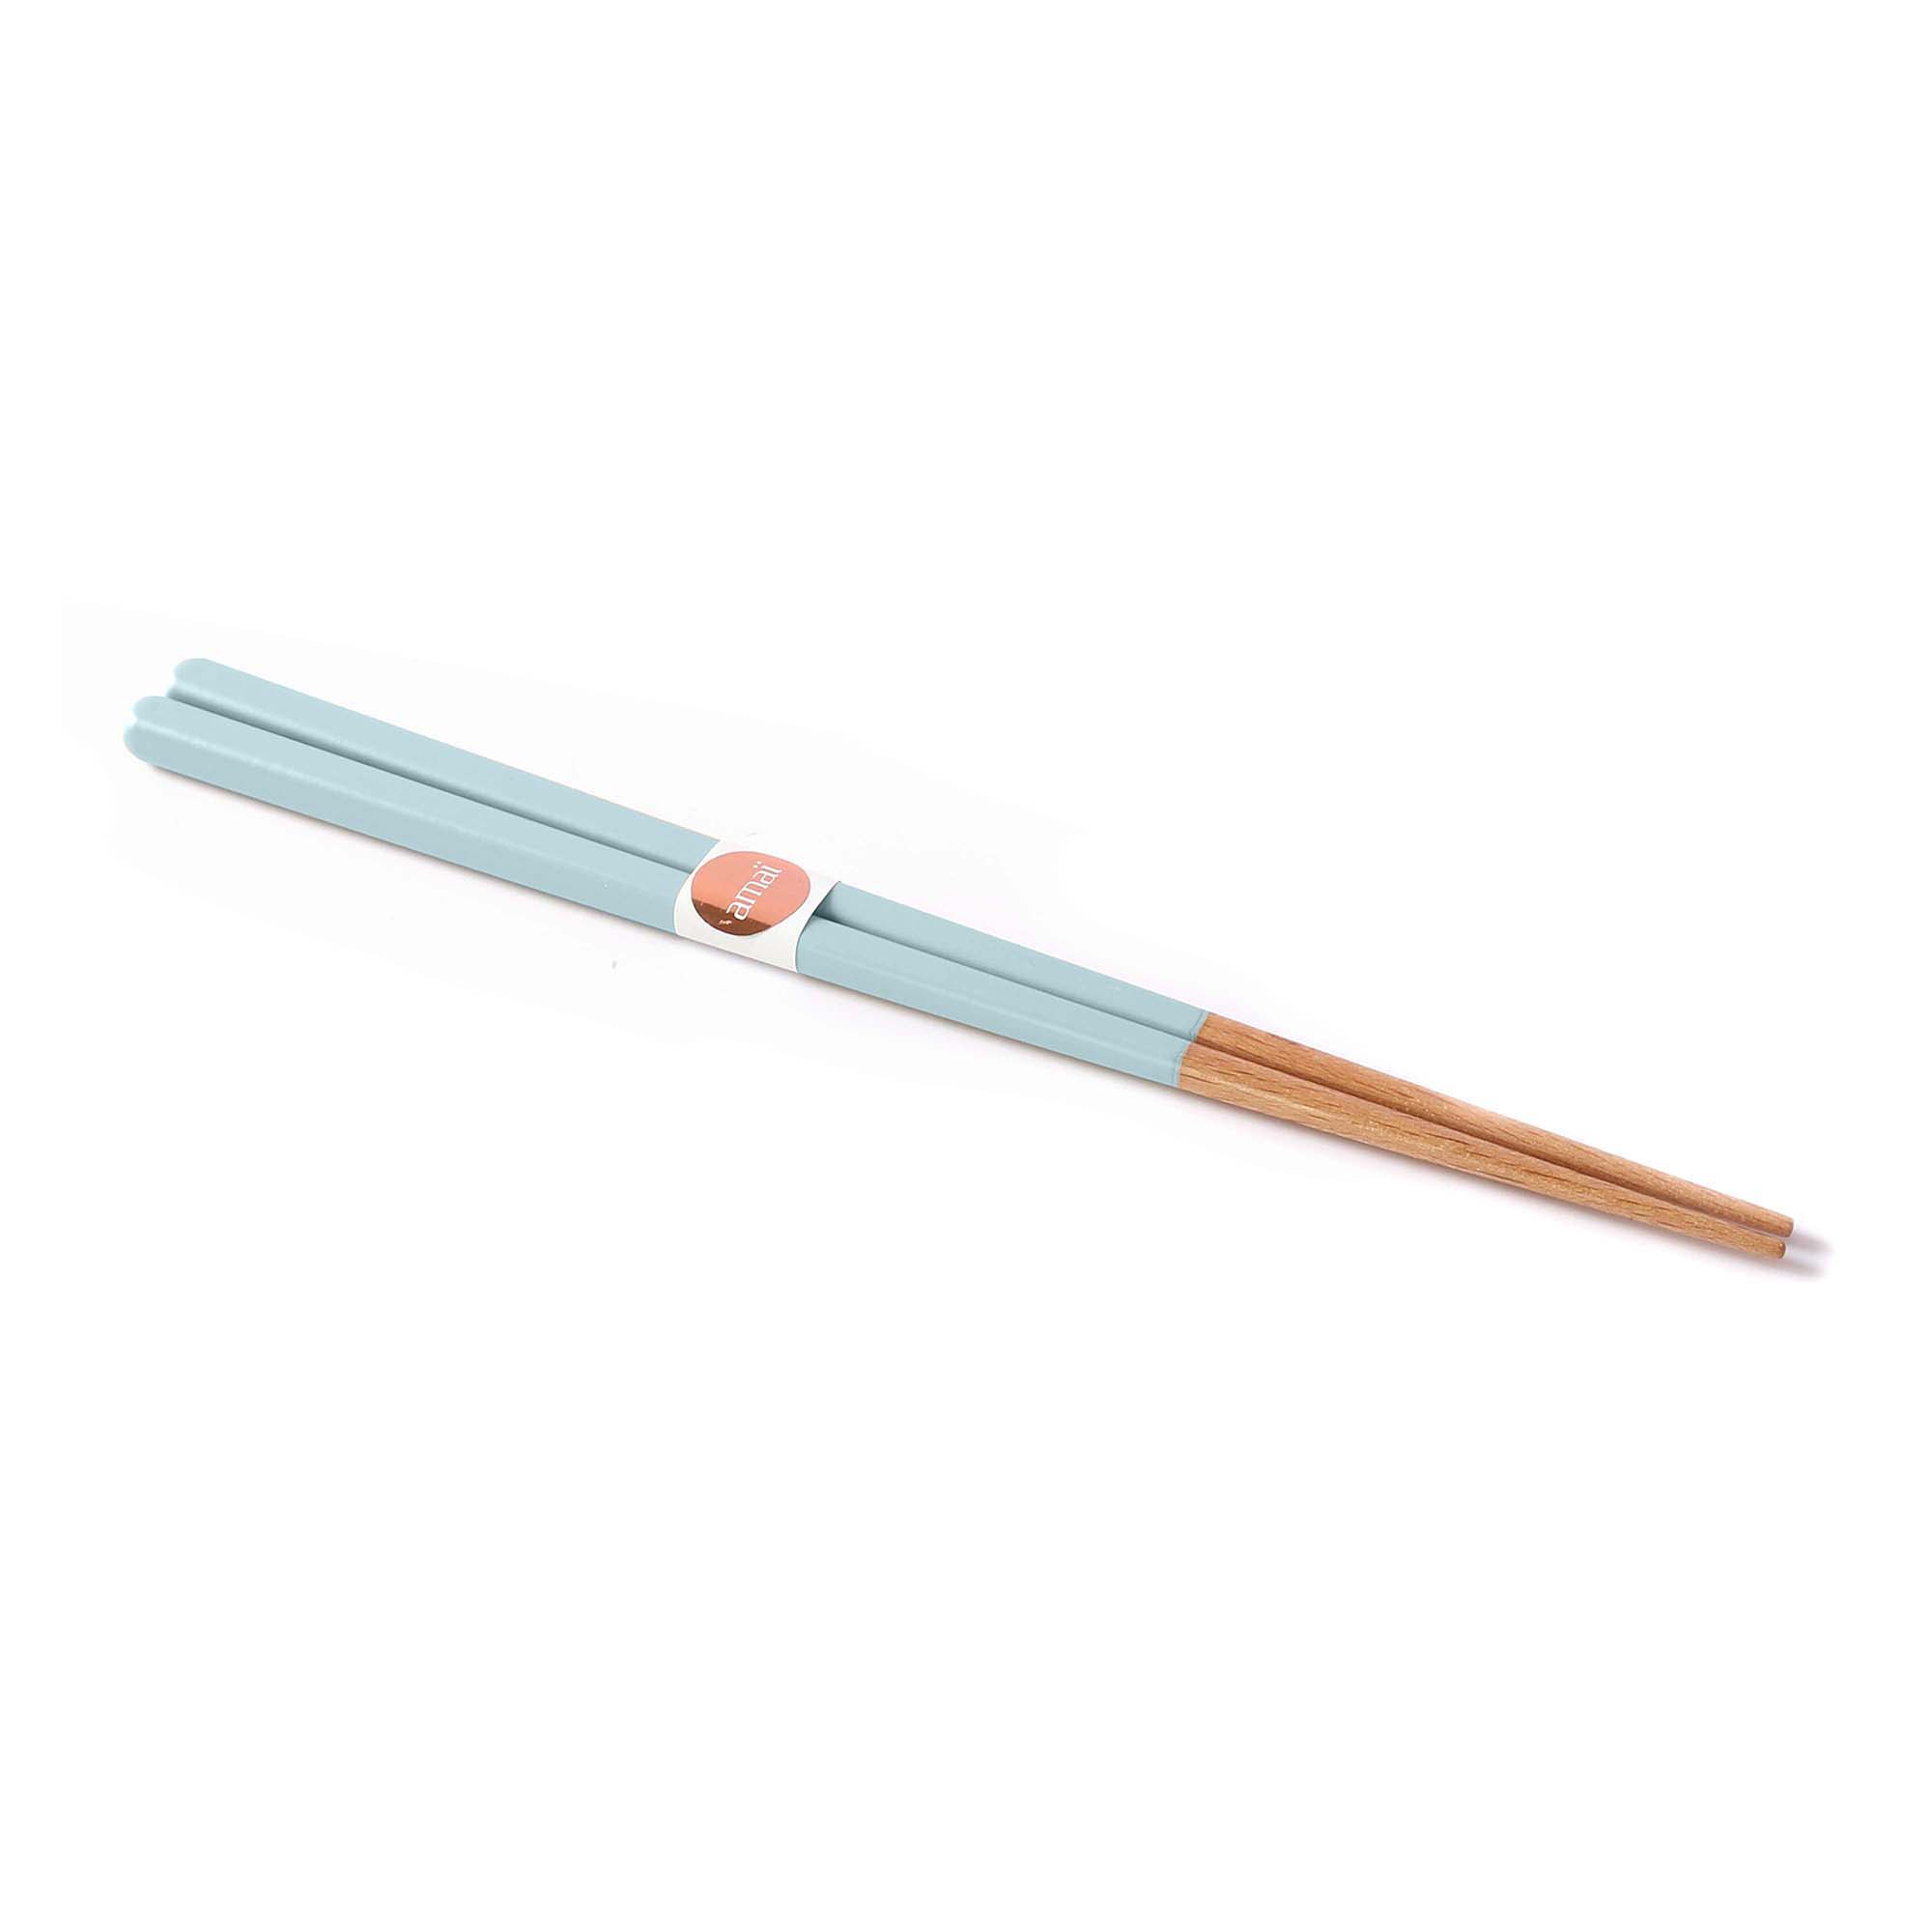 Pokee chopsticks: Light blue